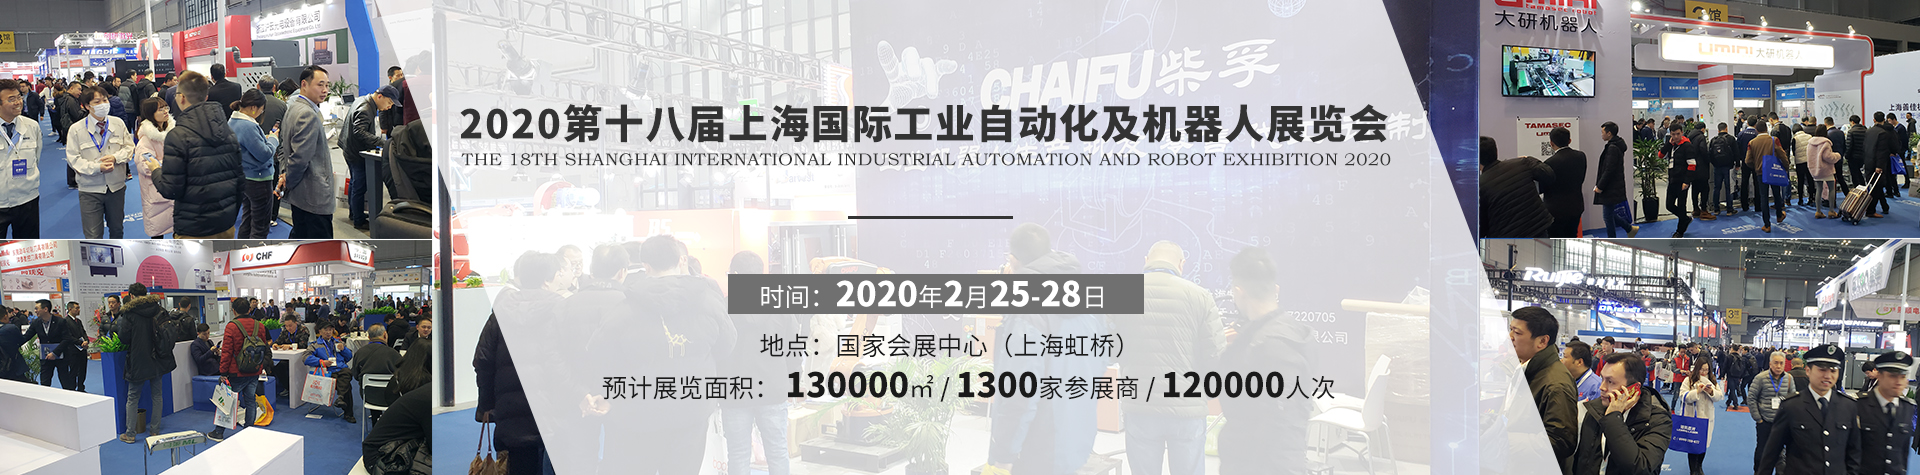 2020第十八届上海国际工业自动化及工业机器人展